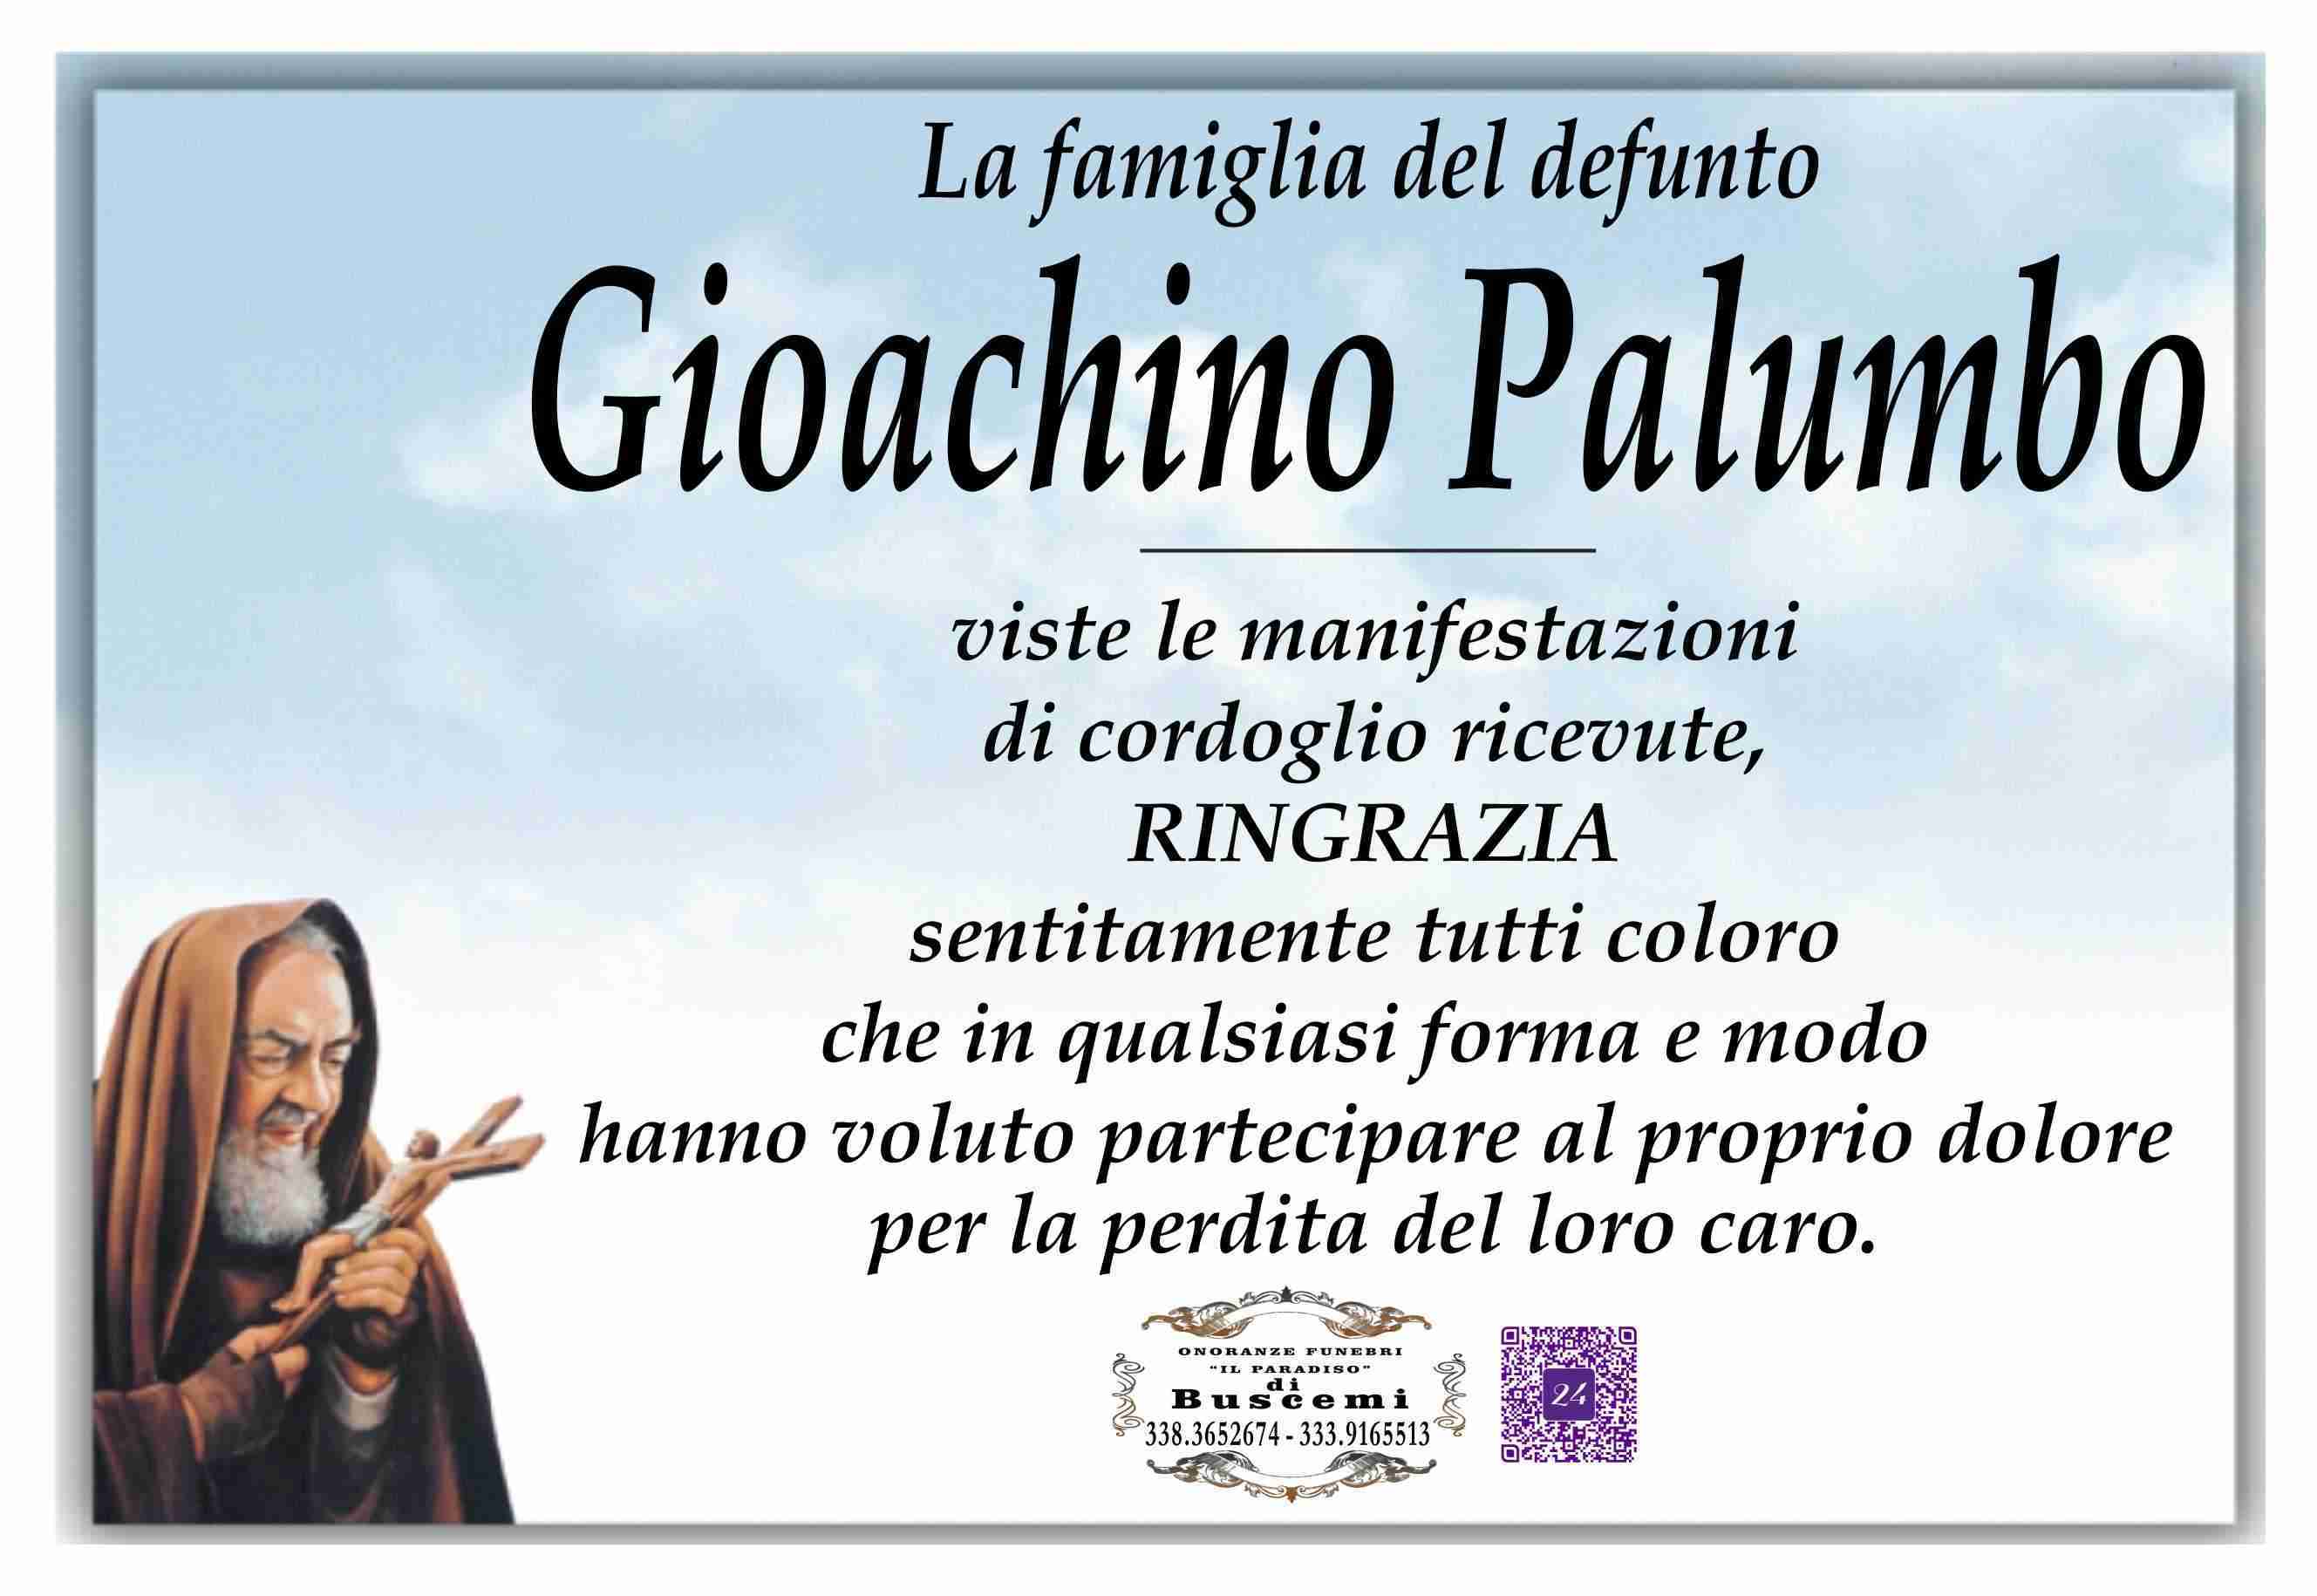 Gioachino Palumbo